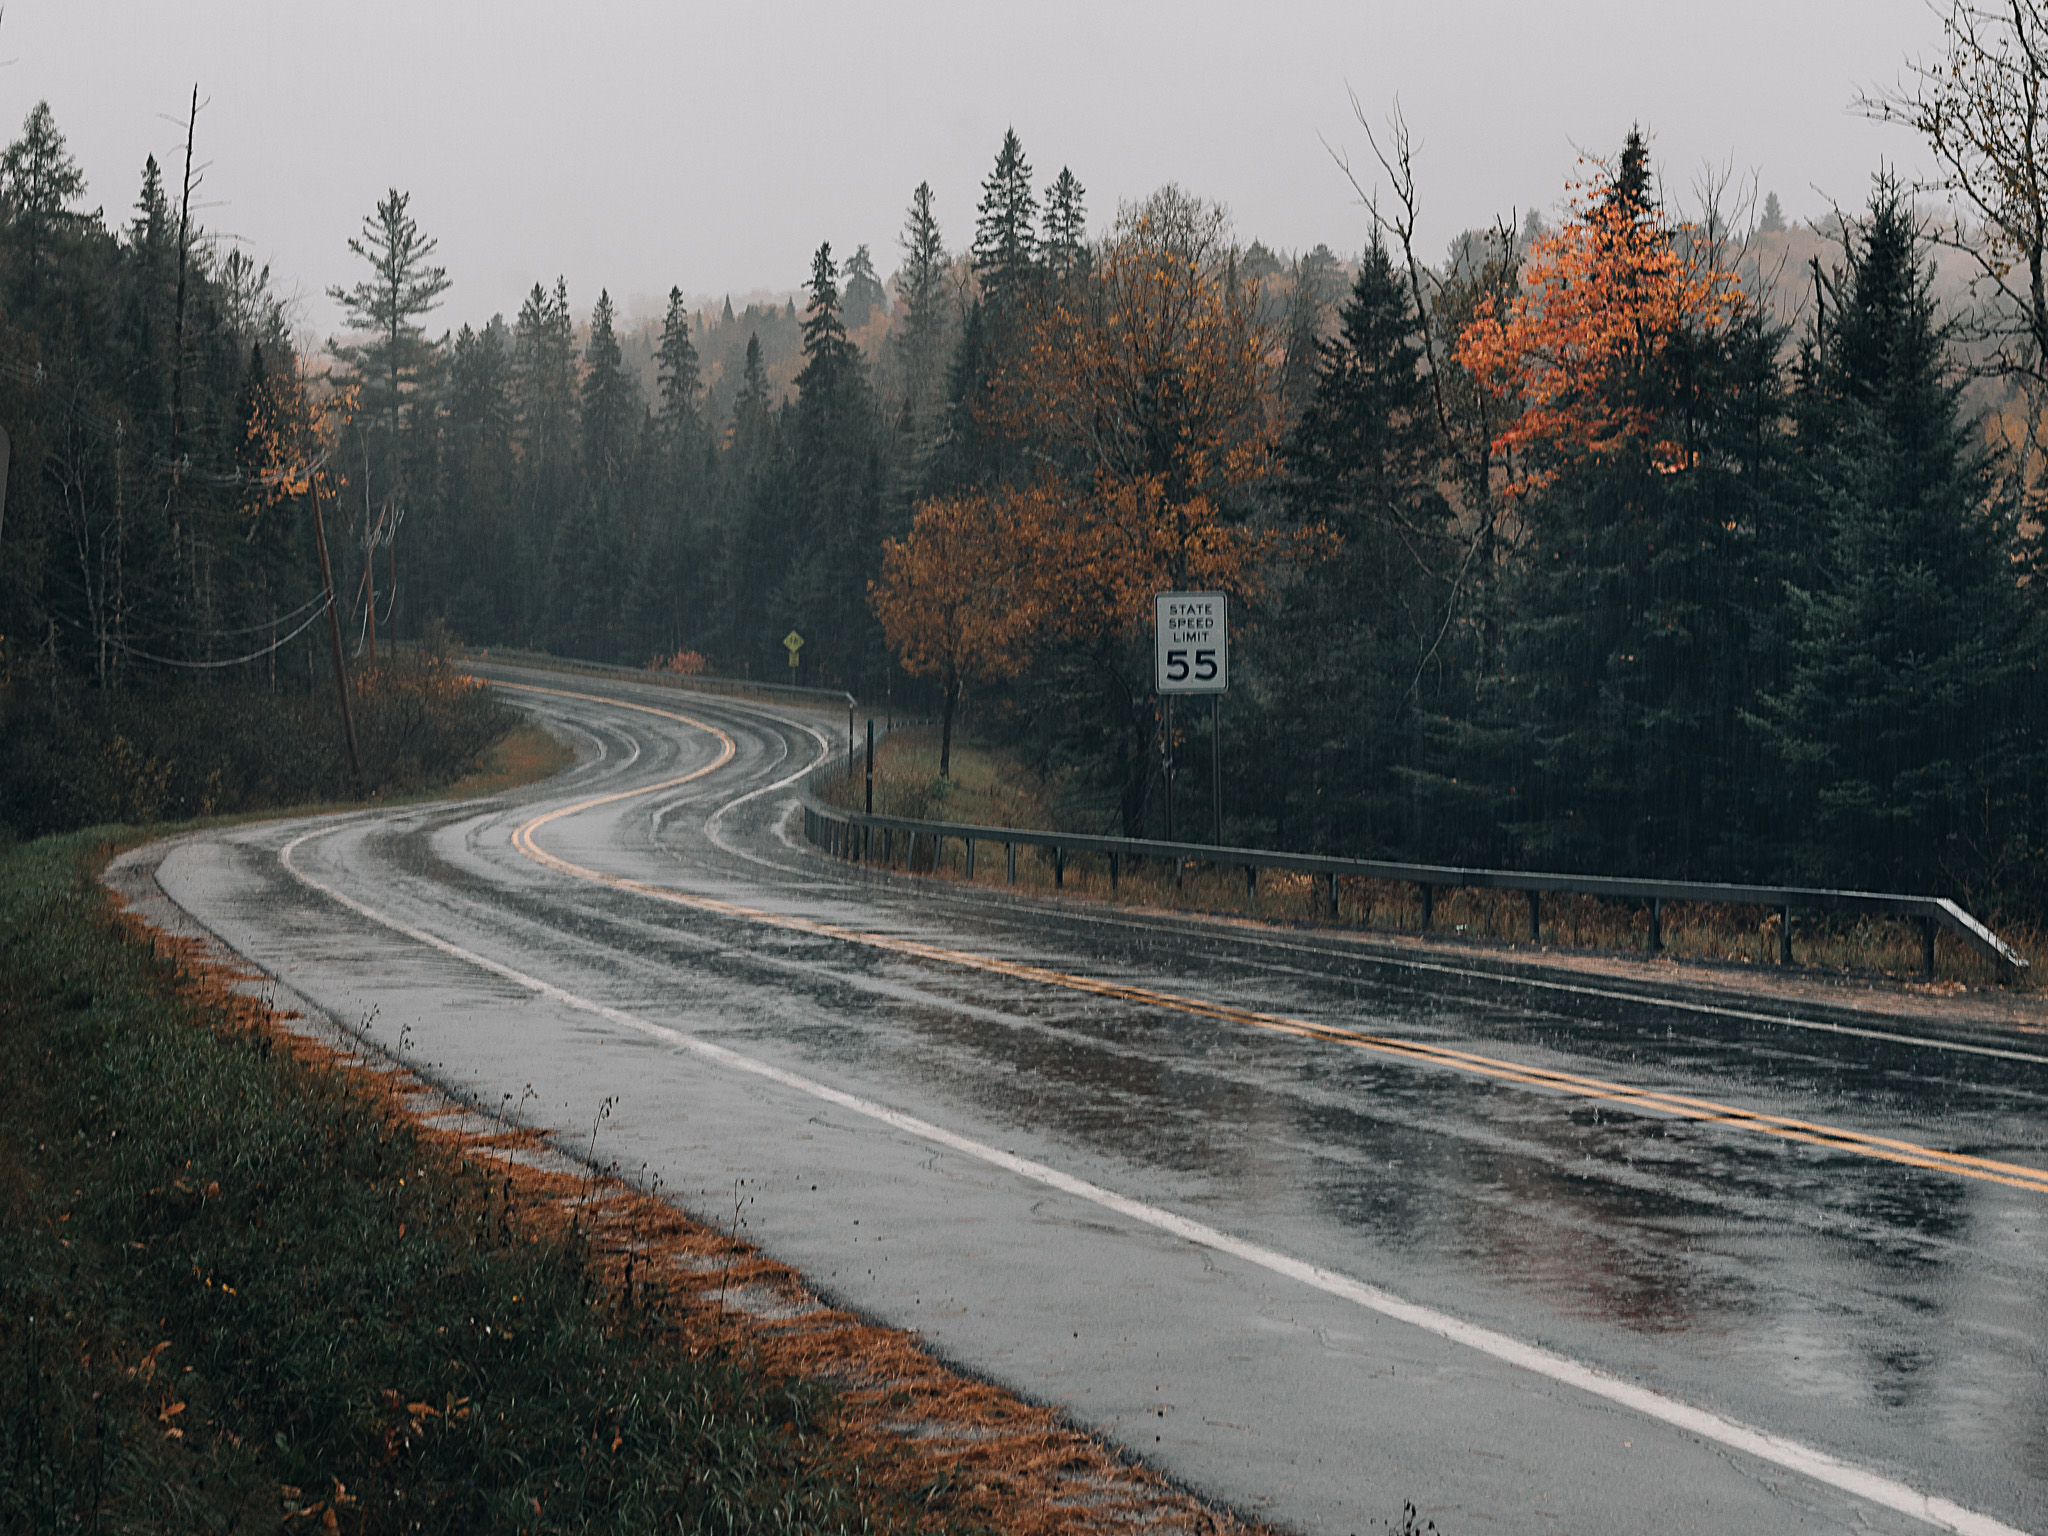 A windy wet road among fall foliage